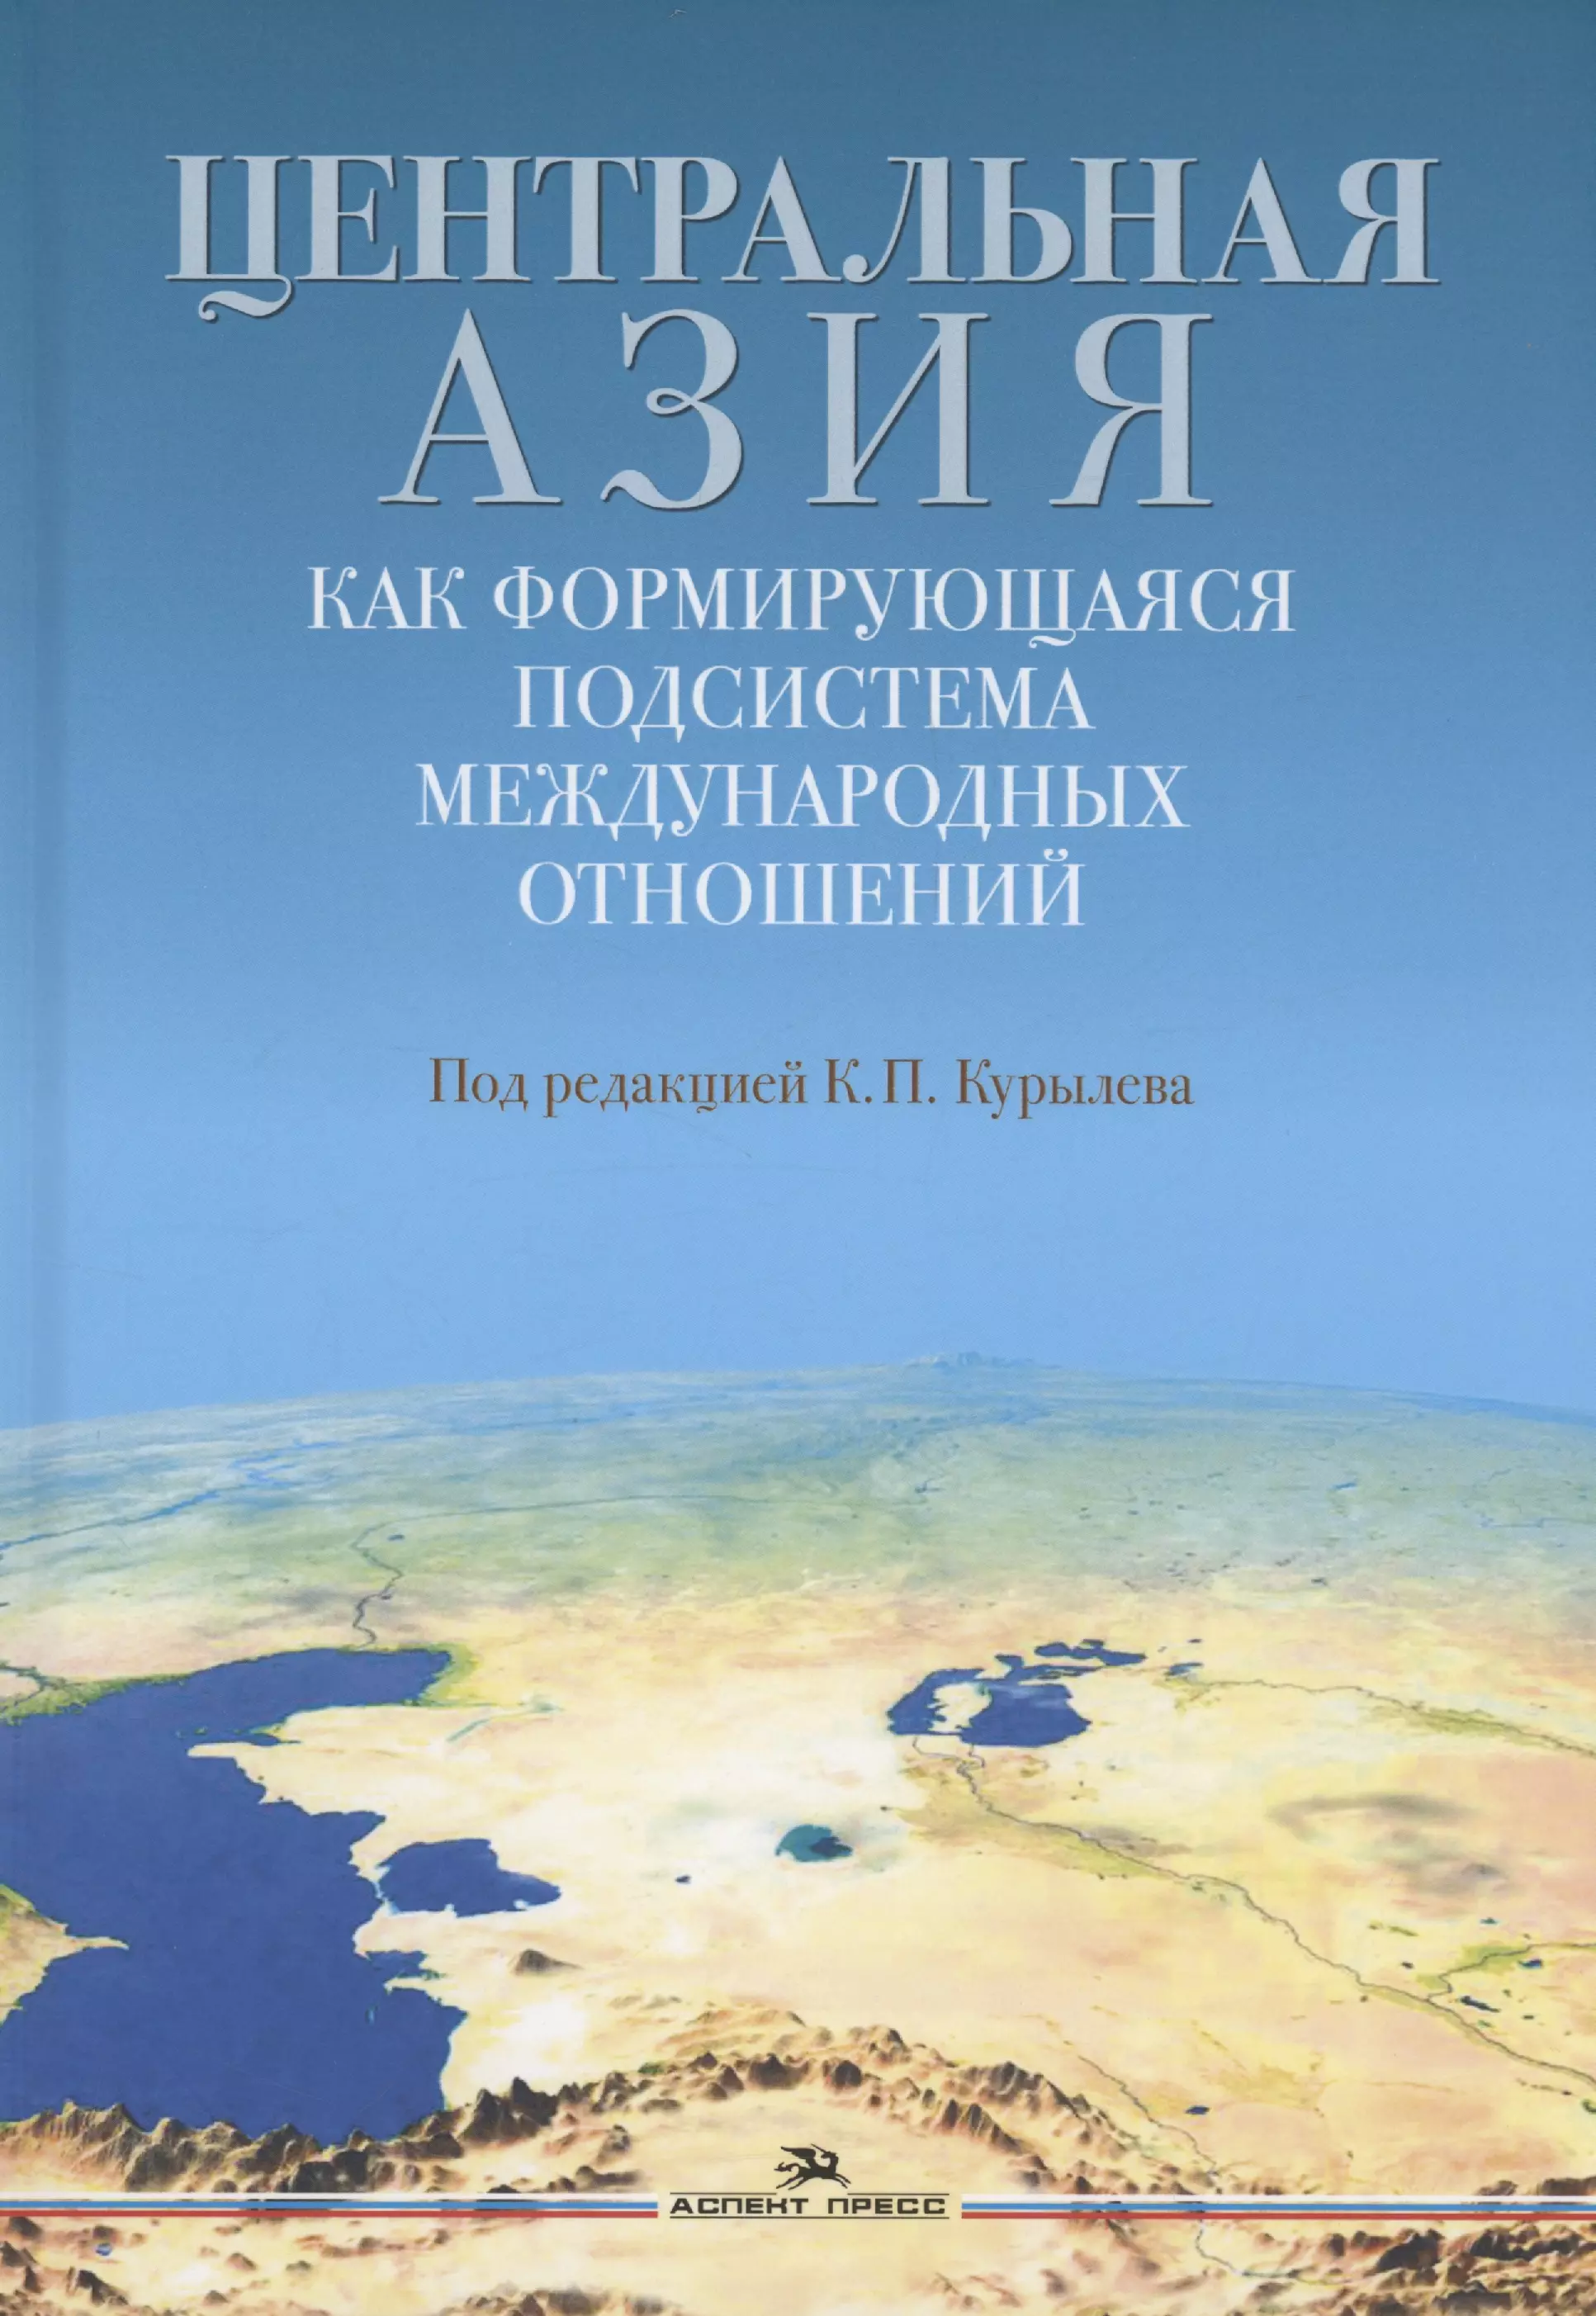 

Центральная Азия как формирующаяся подсистема международных отношений